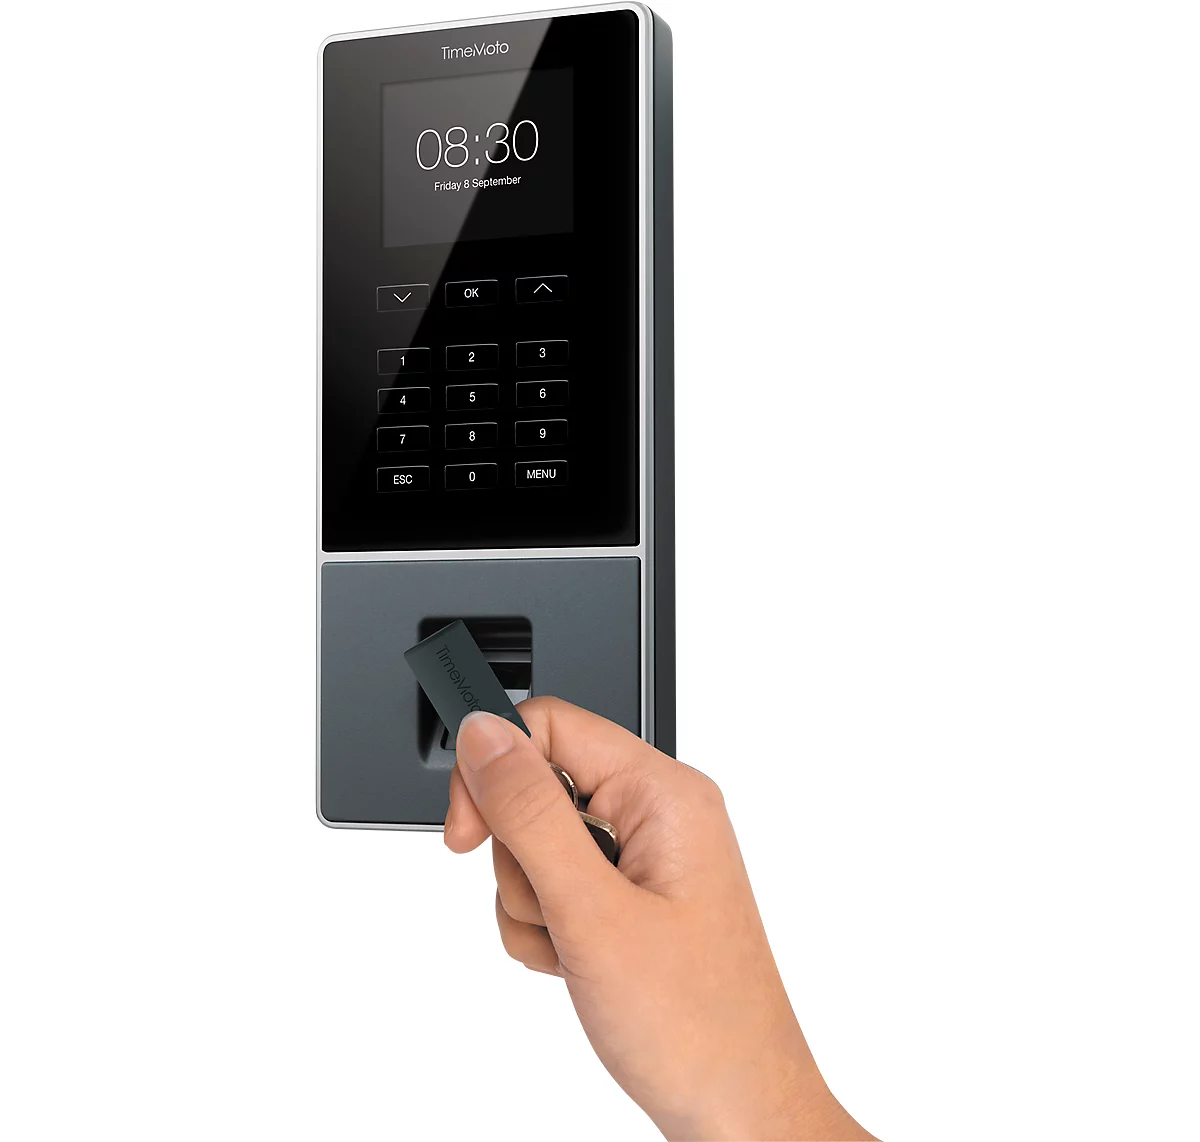 Zeiterfassungssystem TimeMoto TM-626, Wandmontage, Komplettlösung, bis 200 Nutzer, ID per RFID/PIN/Fingerabdrucksensor, USB/LAN/WLAN, 5 RFID-Karten